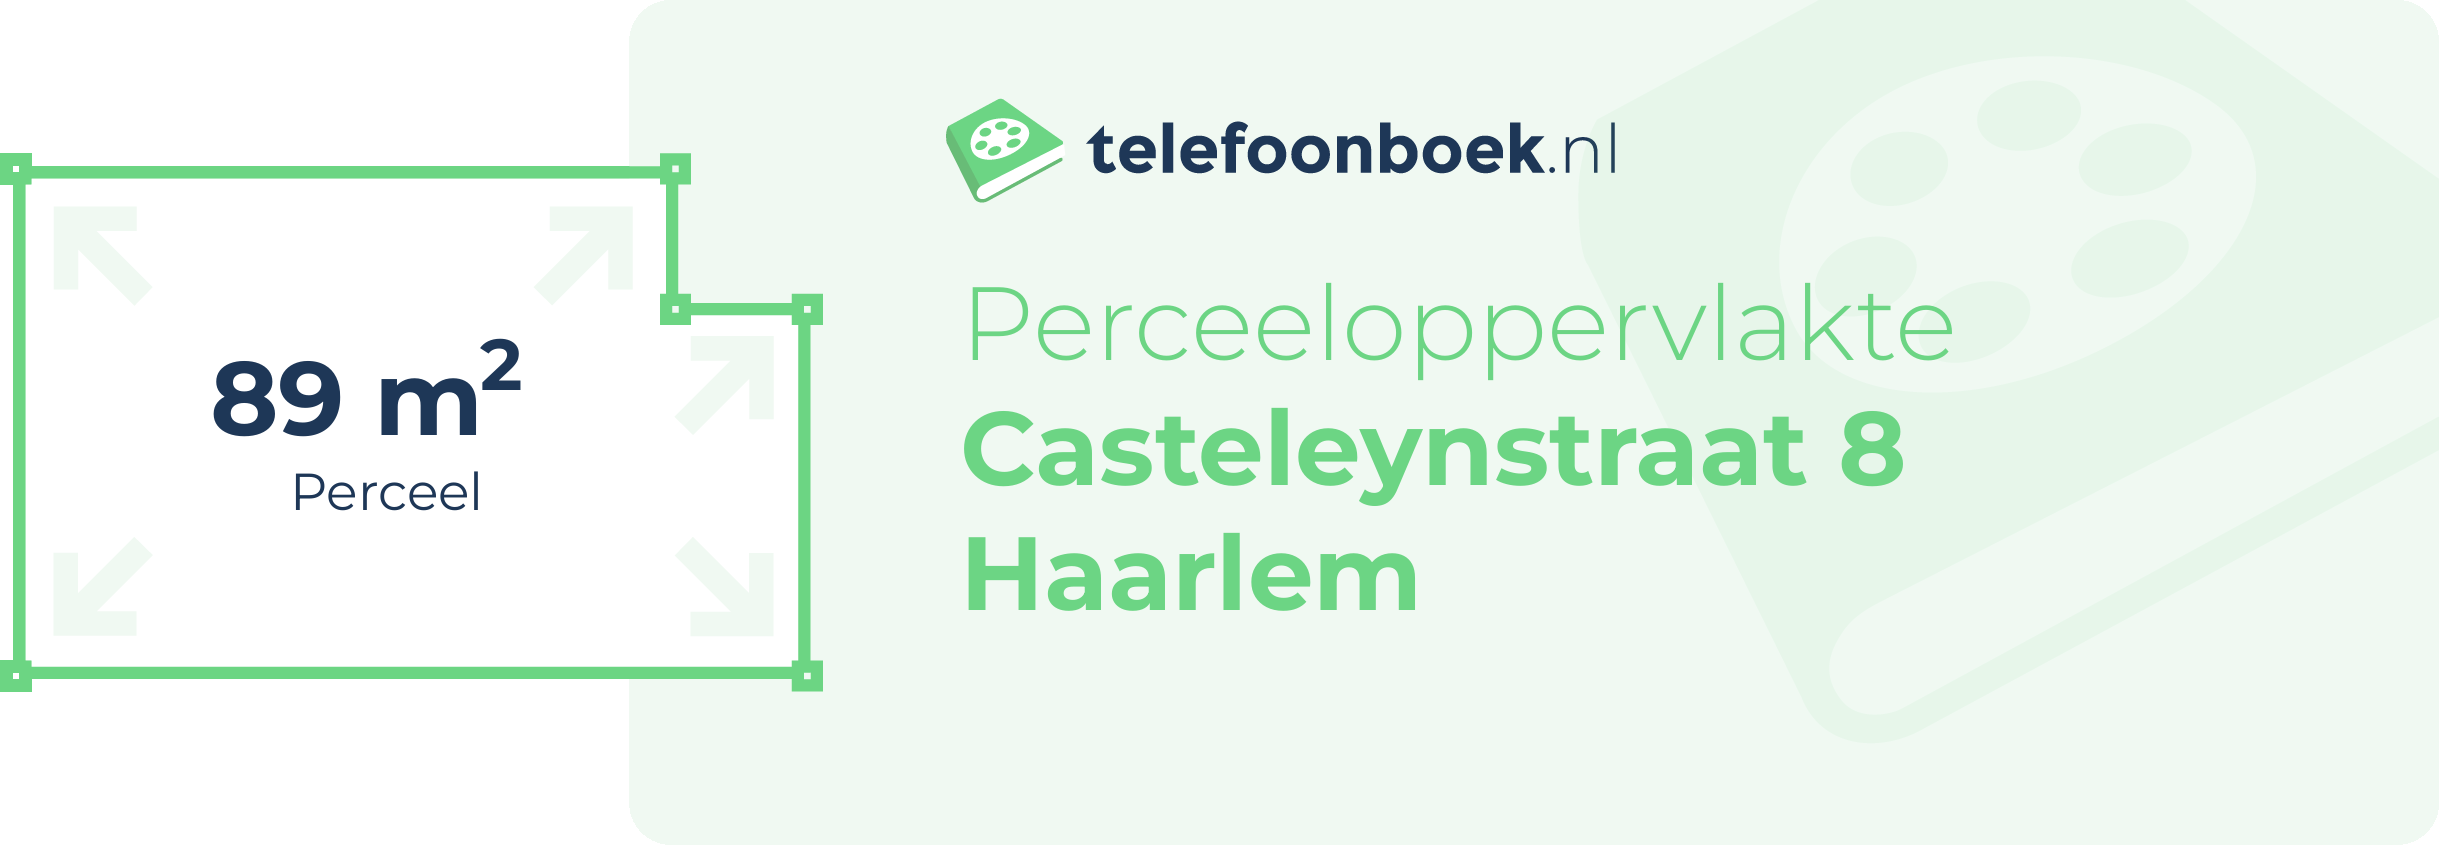 Perceeloppervlakte Casteleynstraat 8 Haarlem